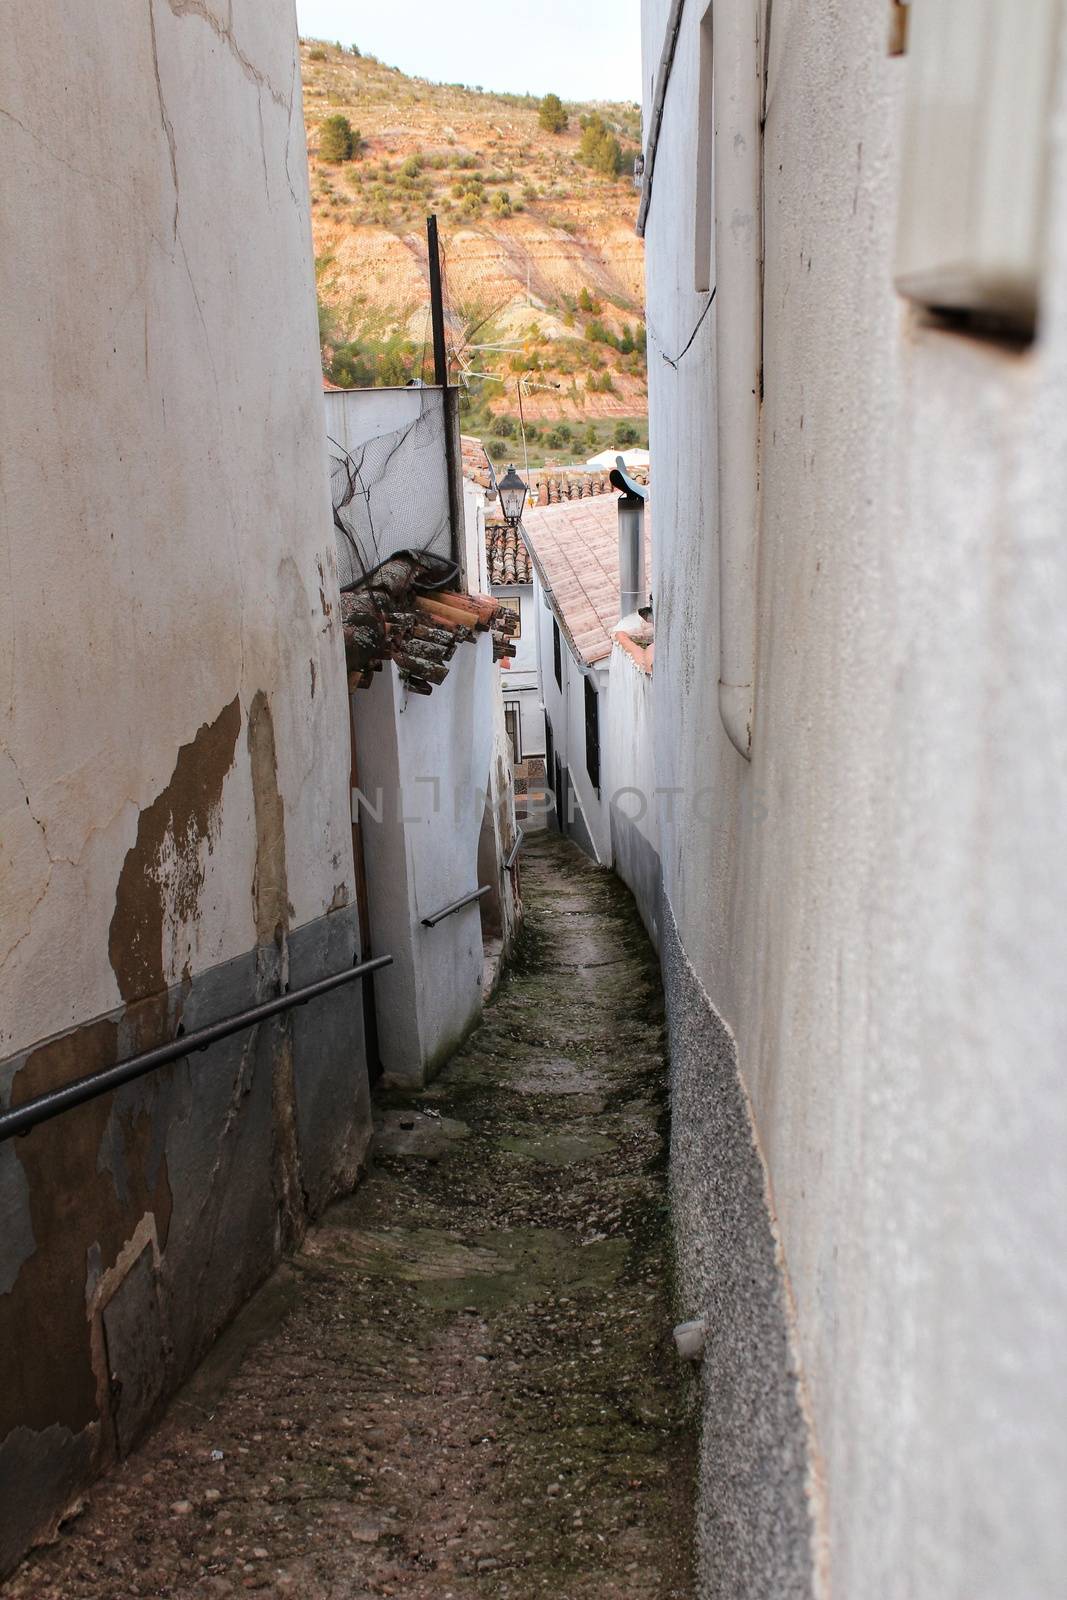 Narrow streets and old facades in Alcaraz, Castilla la Mancha community, Spain